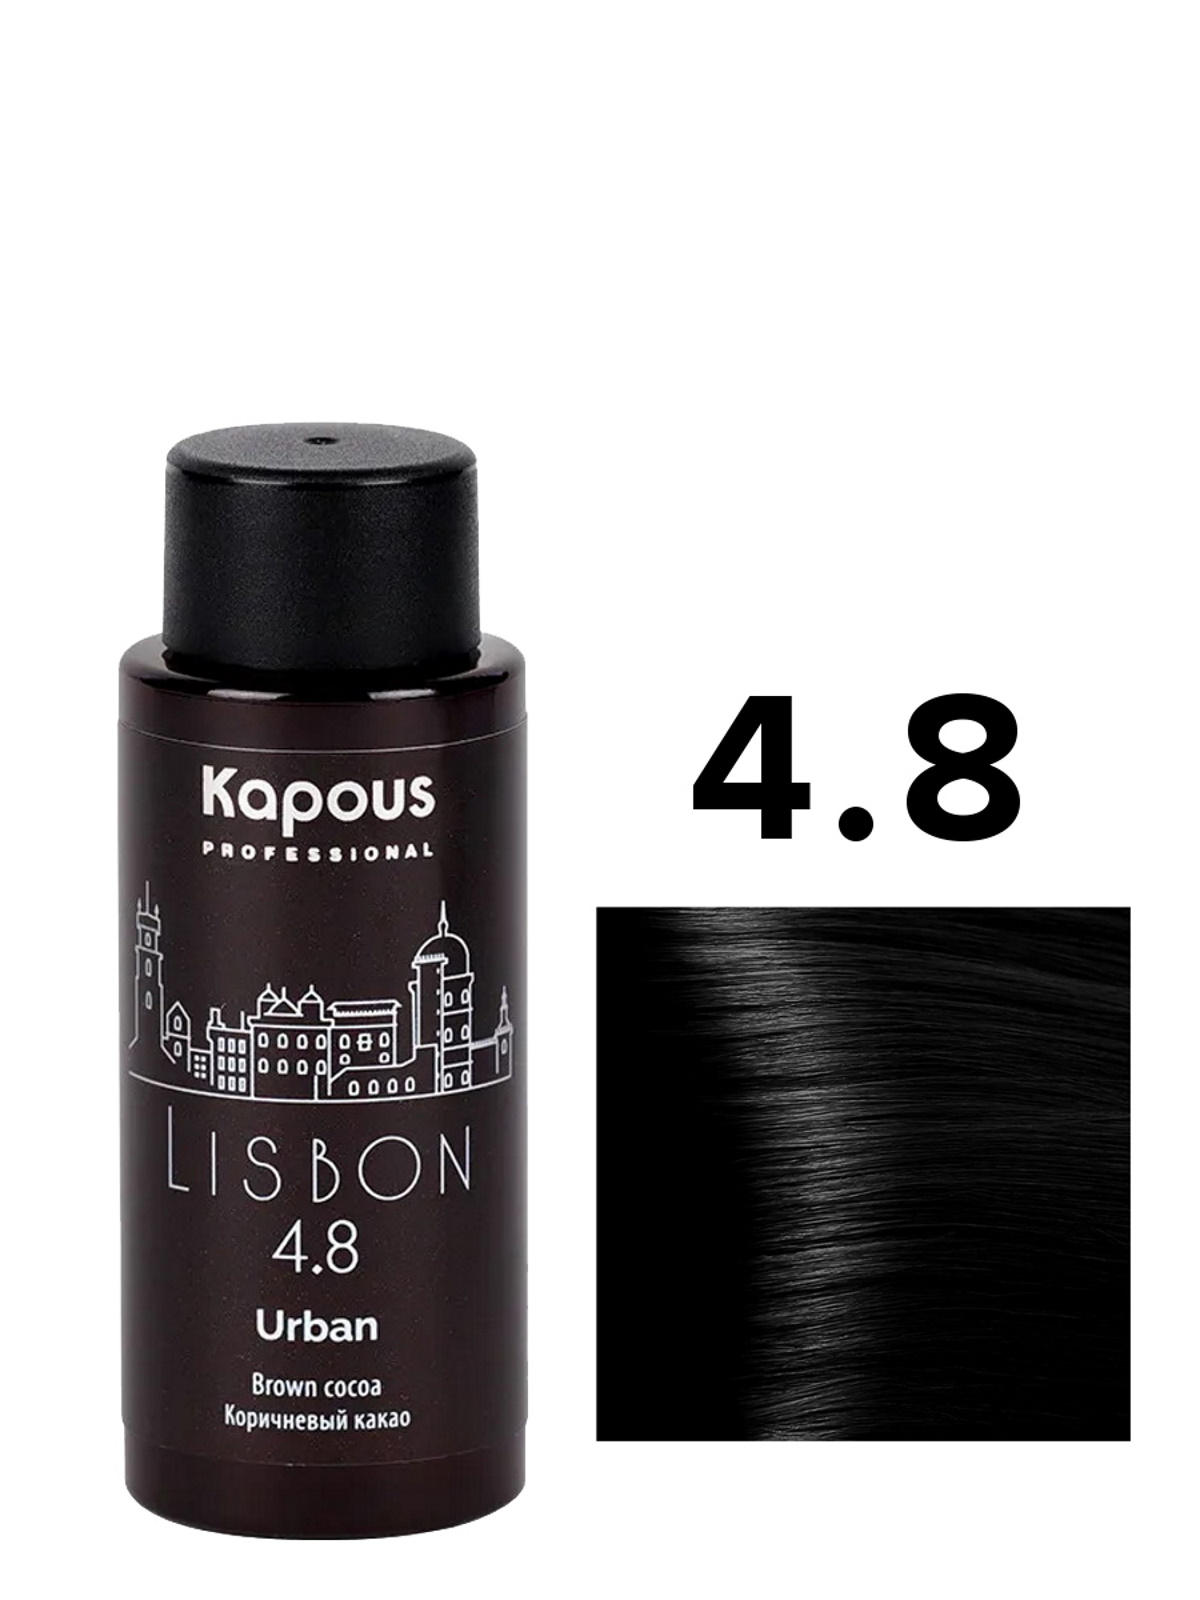 Жидкий краситель URBAN KAPOUS PROFESSIONAL 4.8 коричневый какао 60 мл вазелин косметический для губ с какао маслом